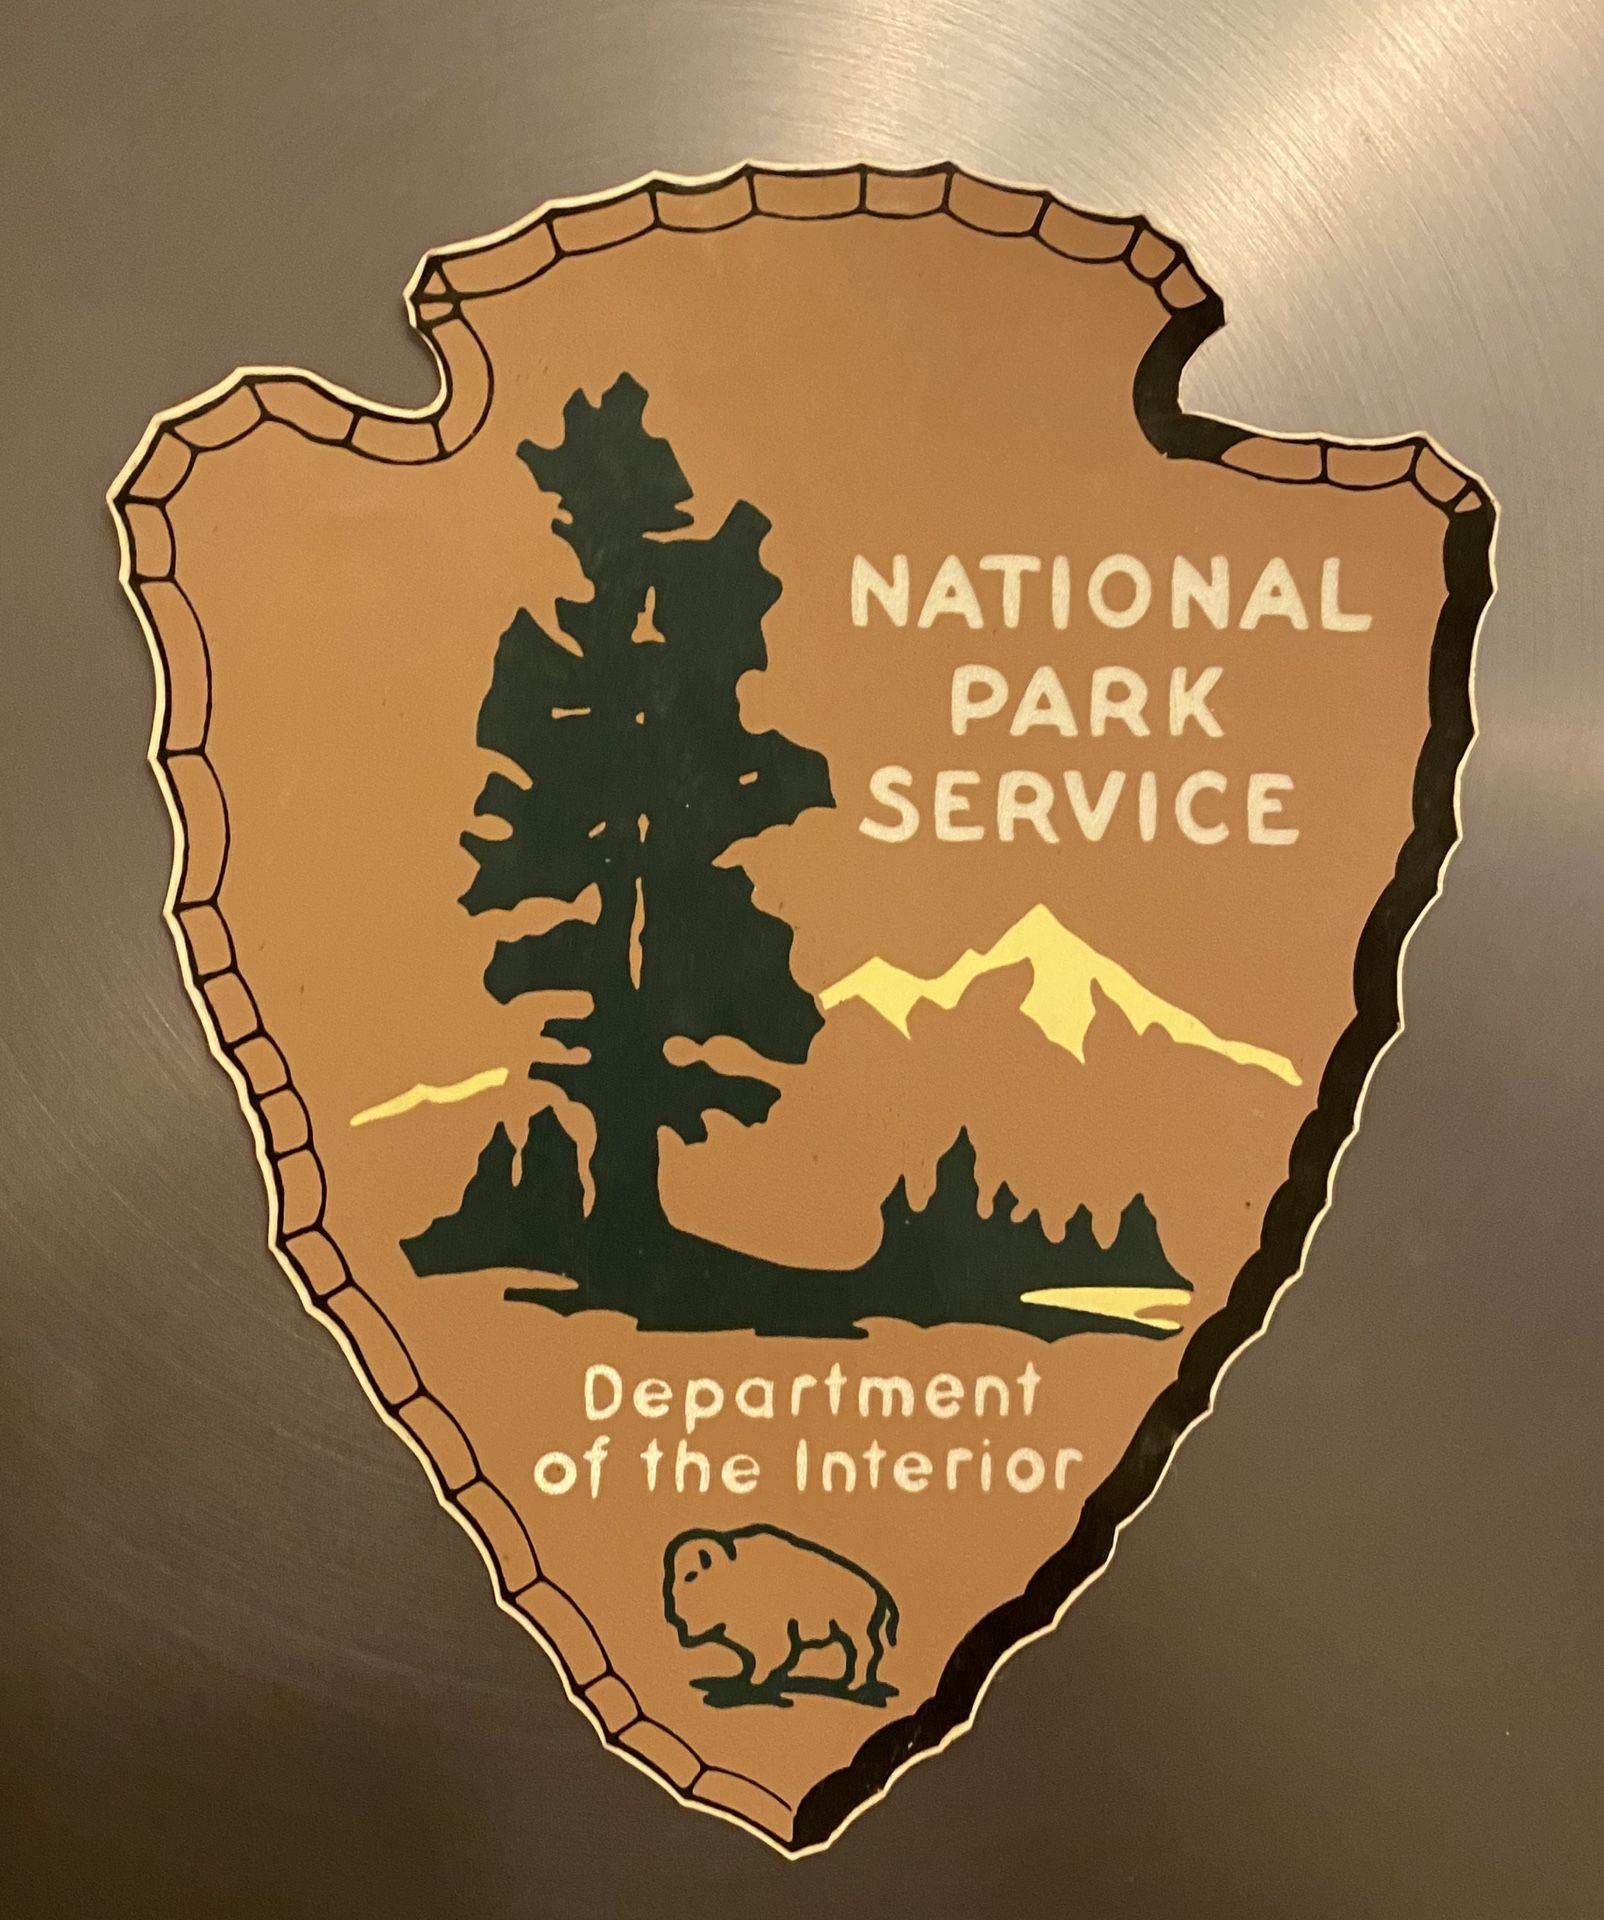 National park service sticker